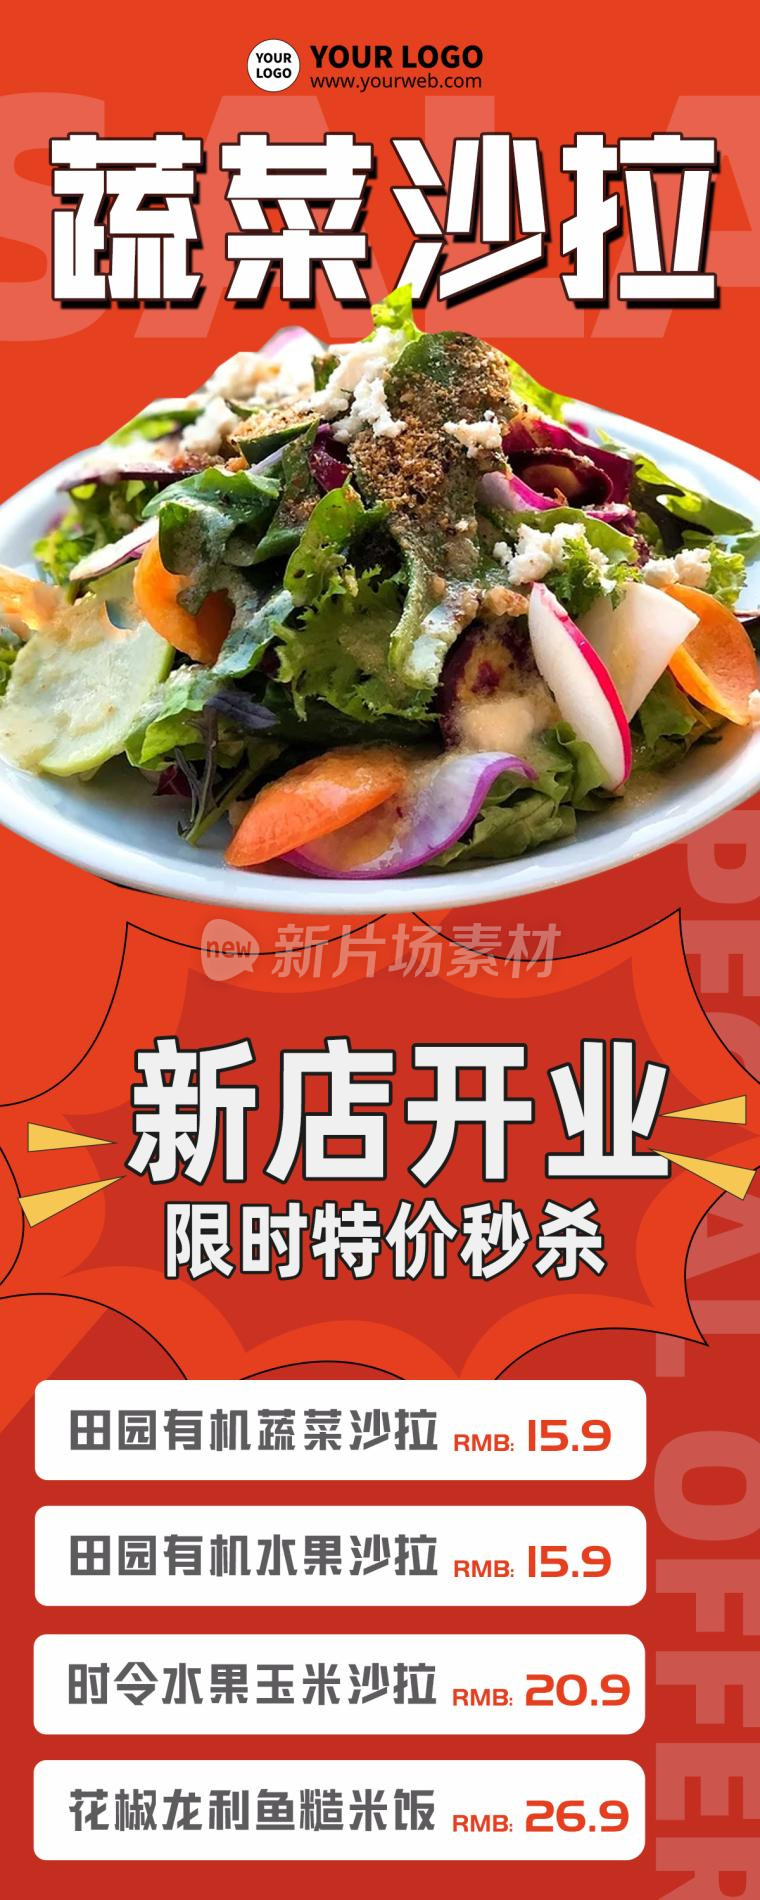 蔬菜沙拉营销宣传红色时尚长图海报